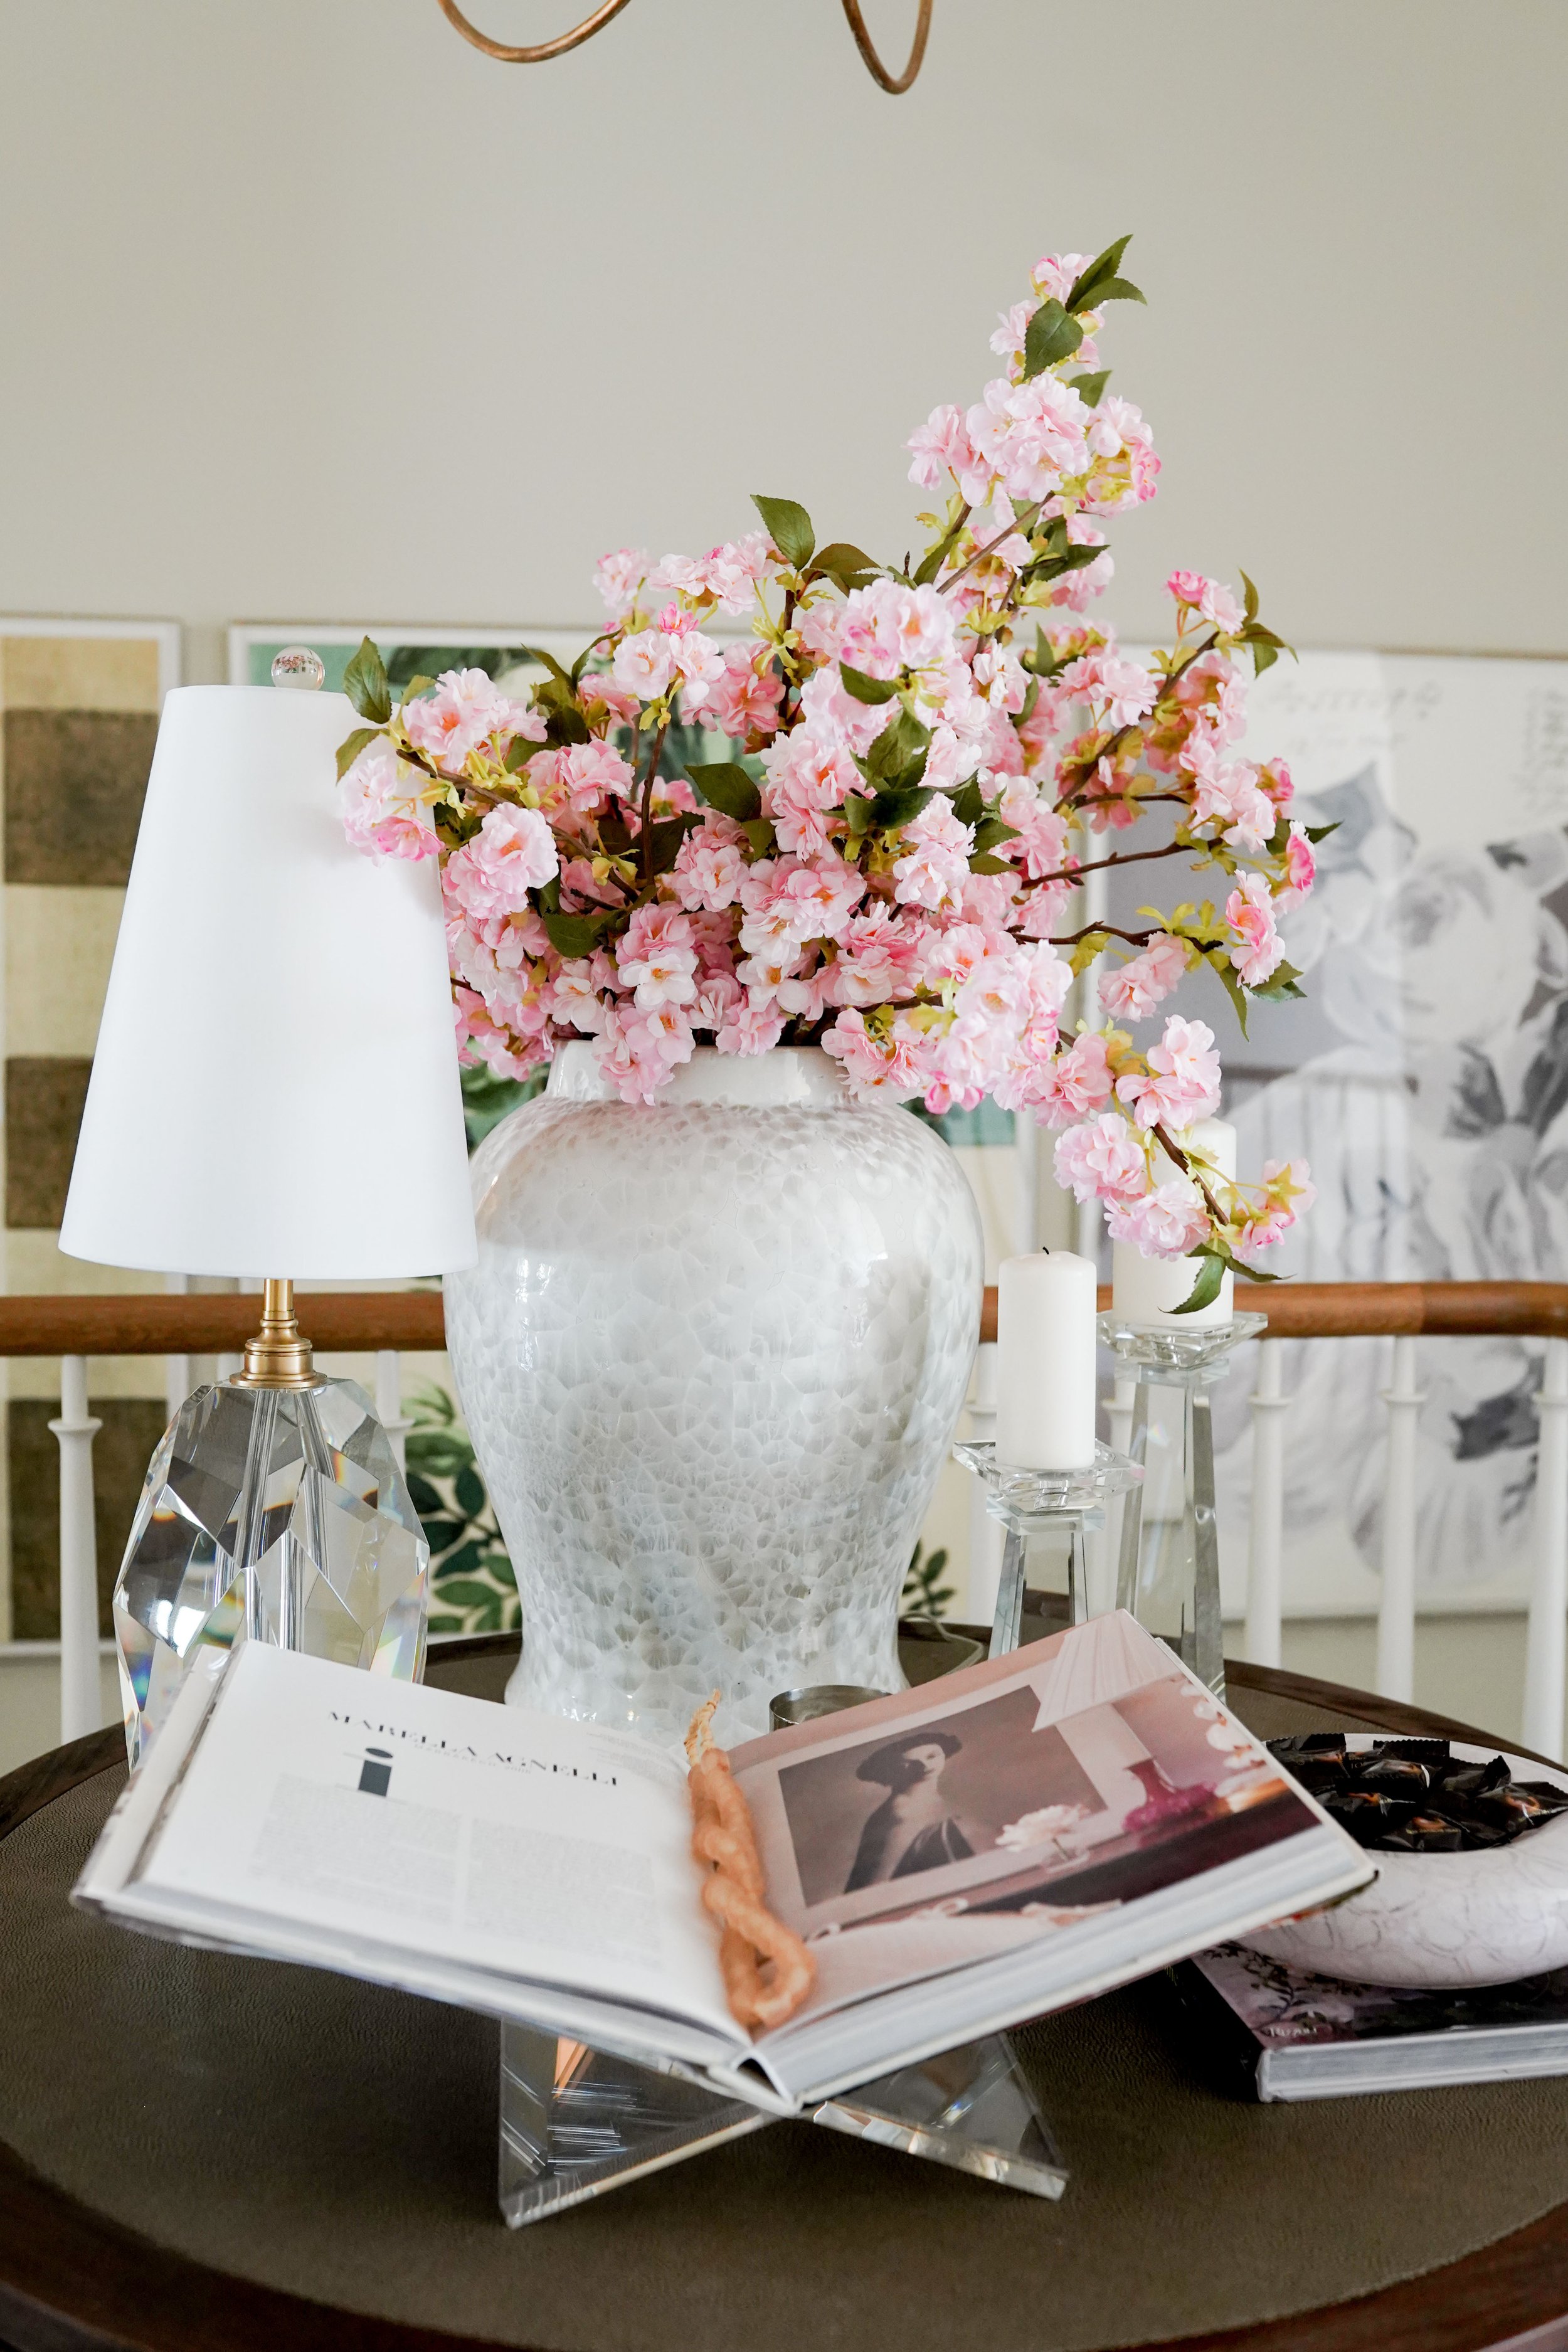 TTT Ceramic Flower Vase for Home Office Decor Pack of 1